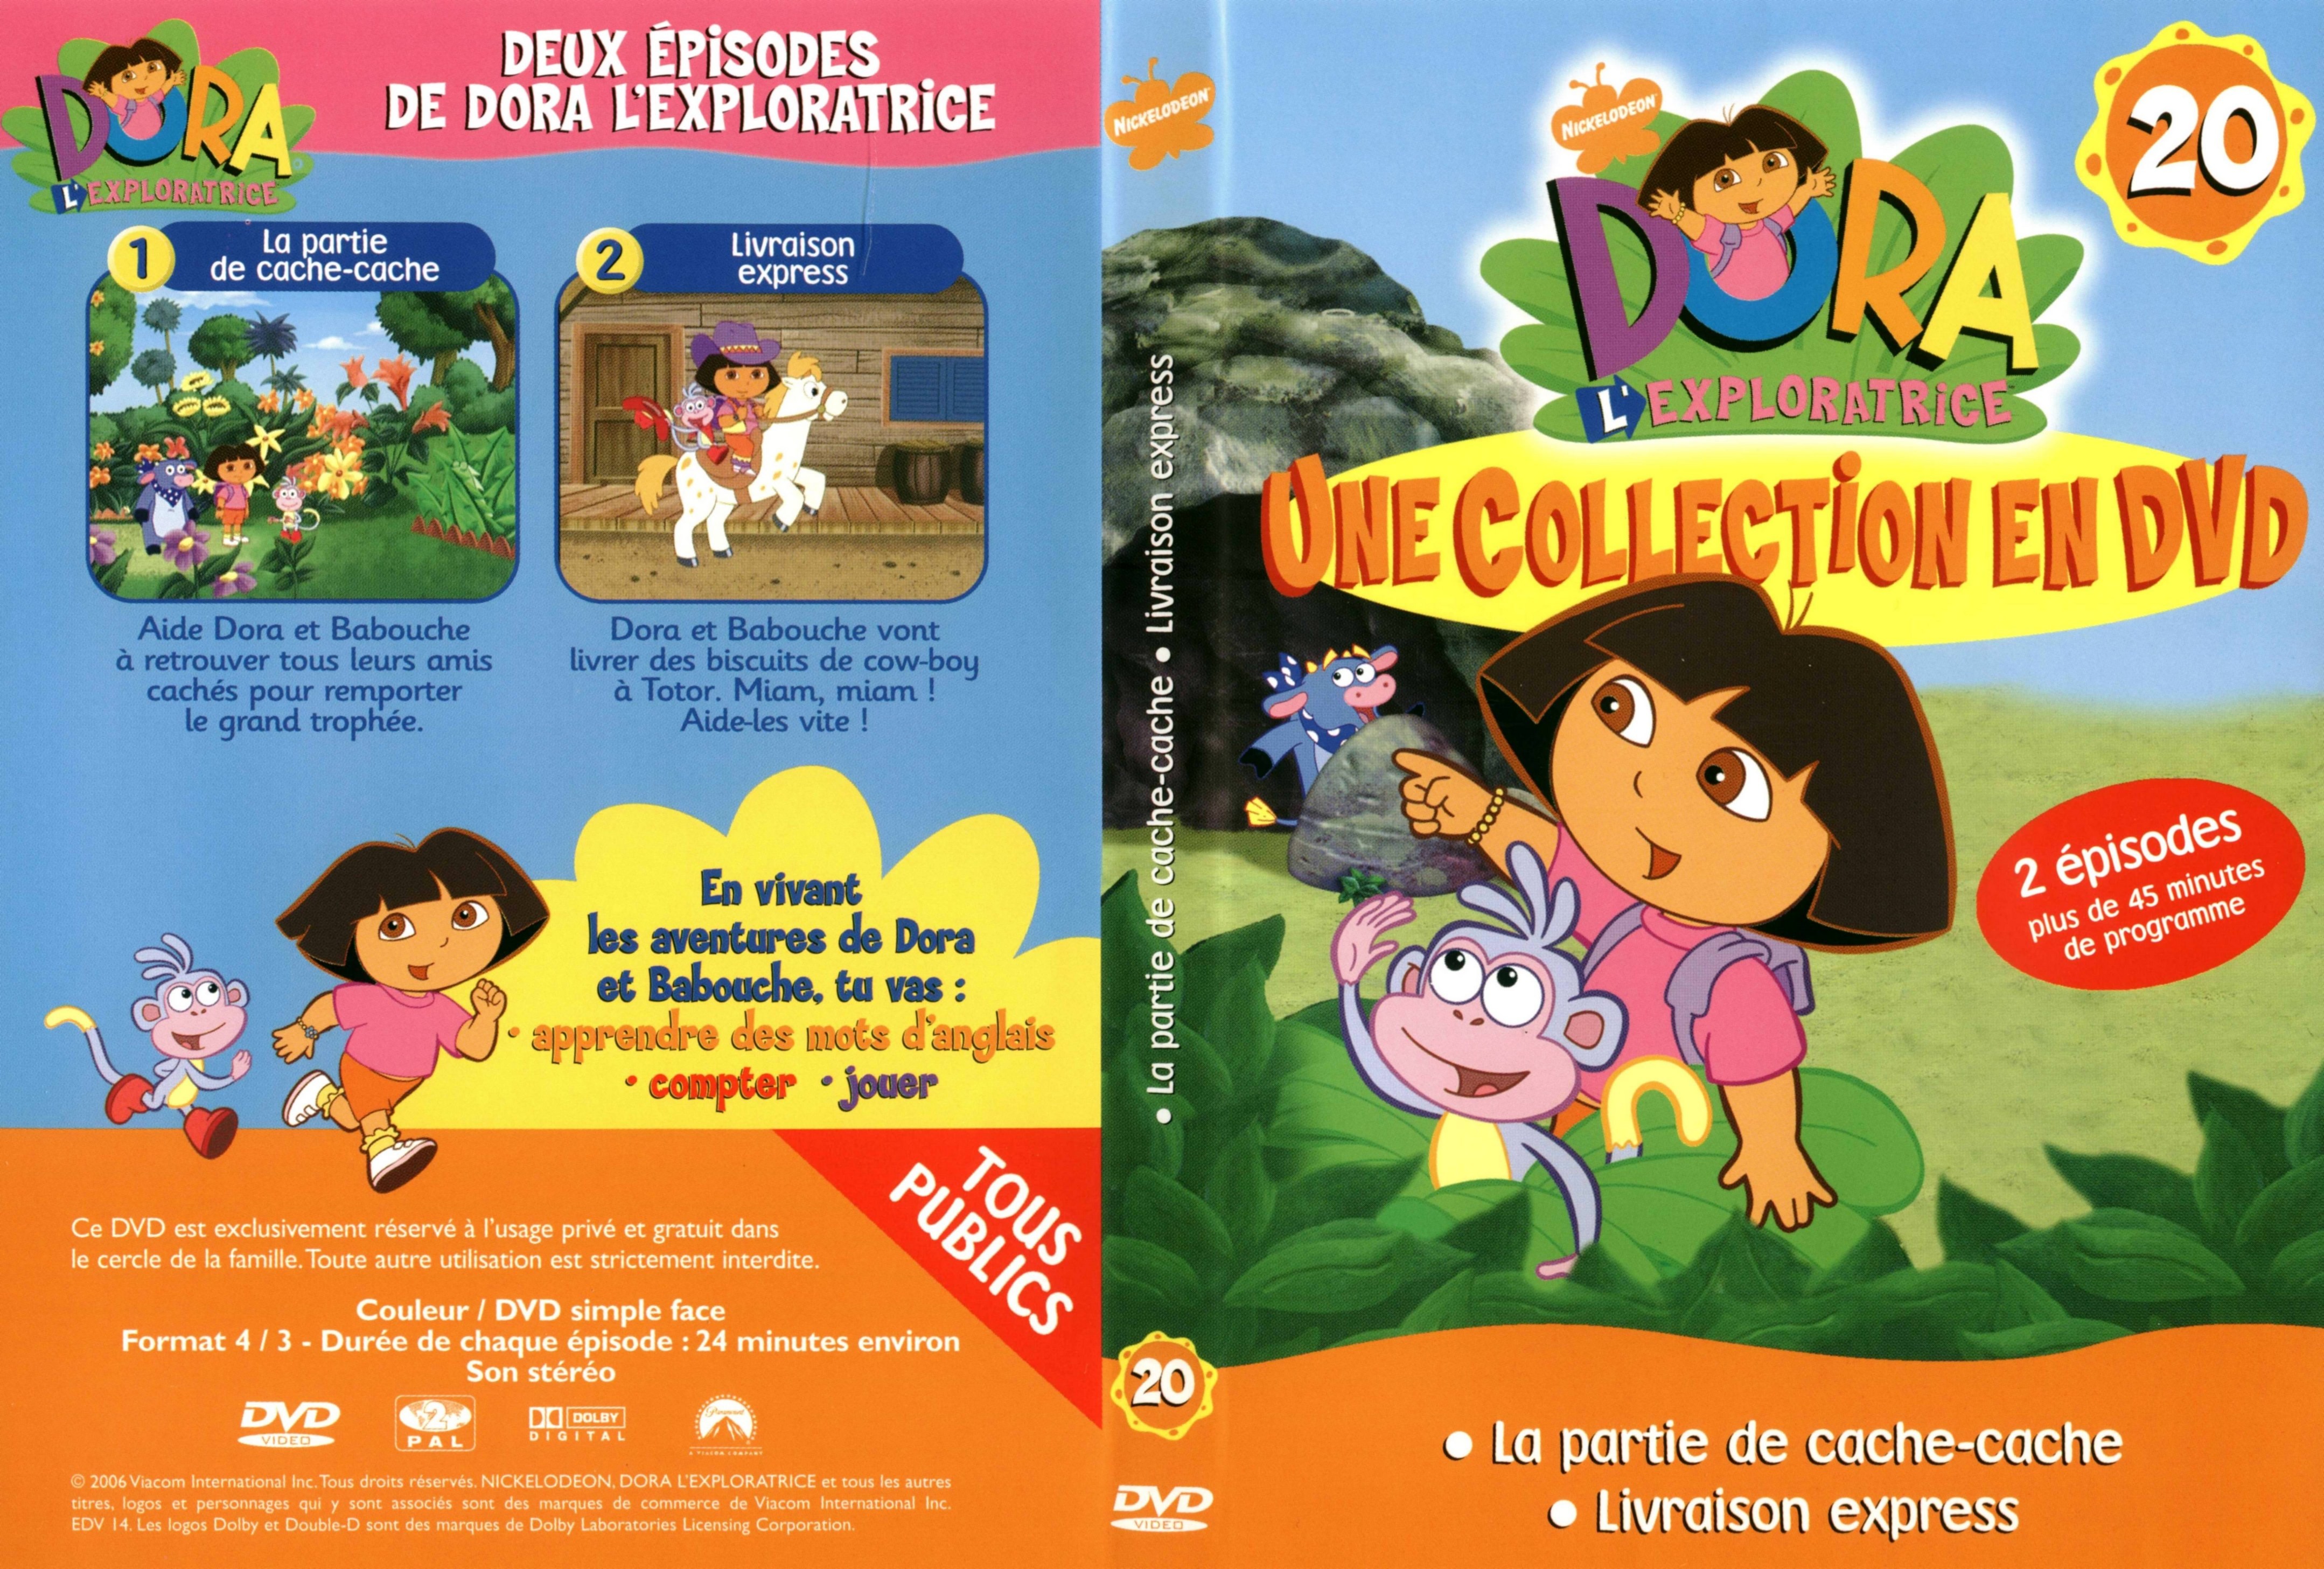 Jaquette DVD De Dora Lexploratrice Vol 20 Cinéma Passion.